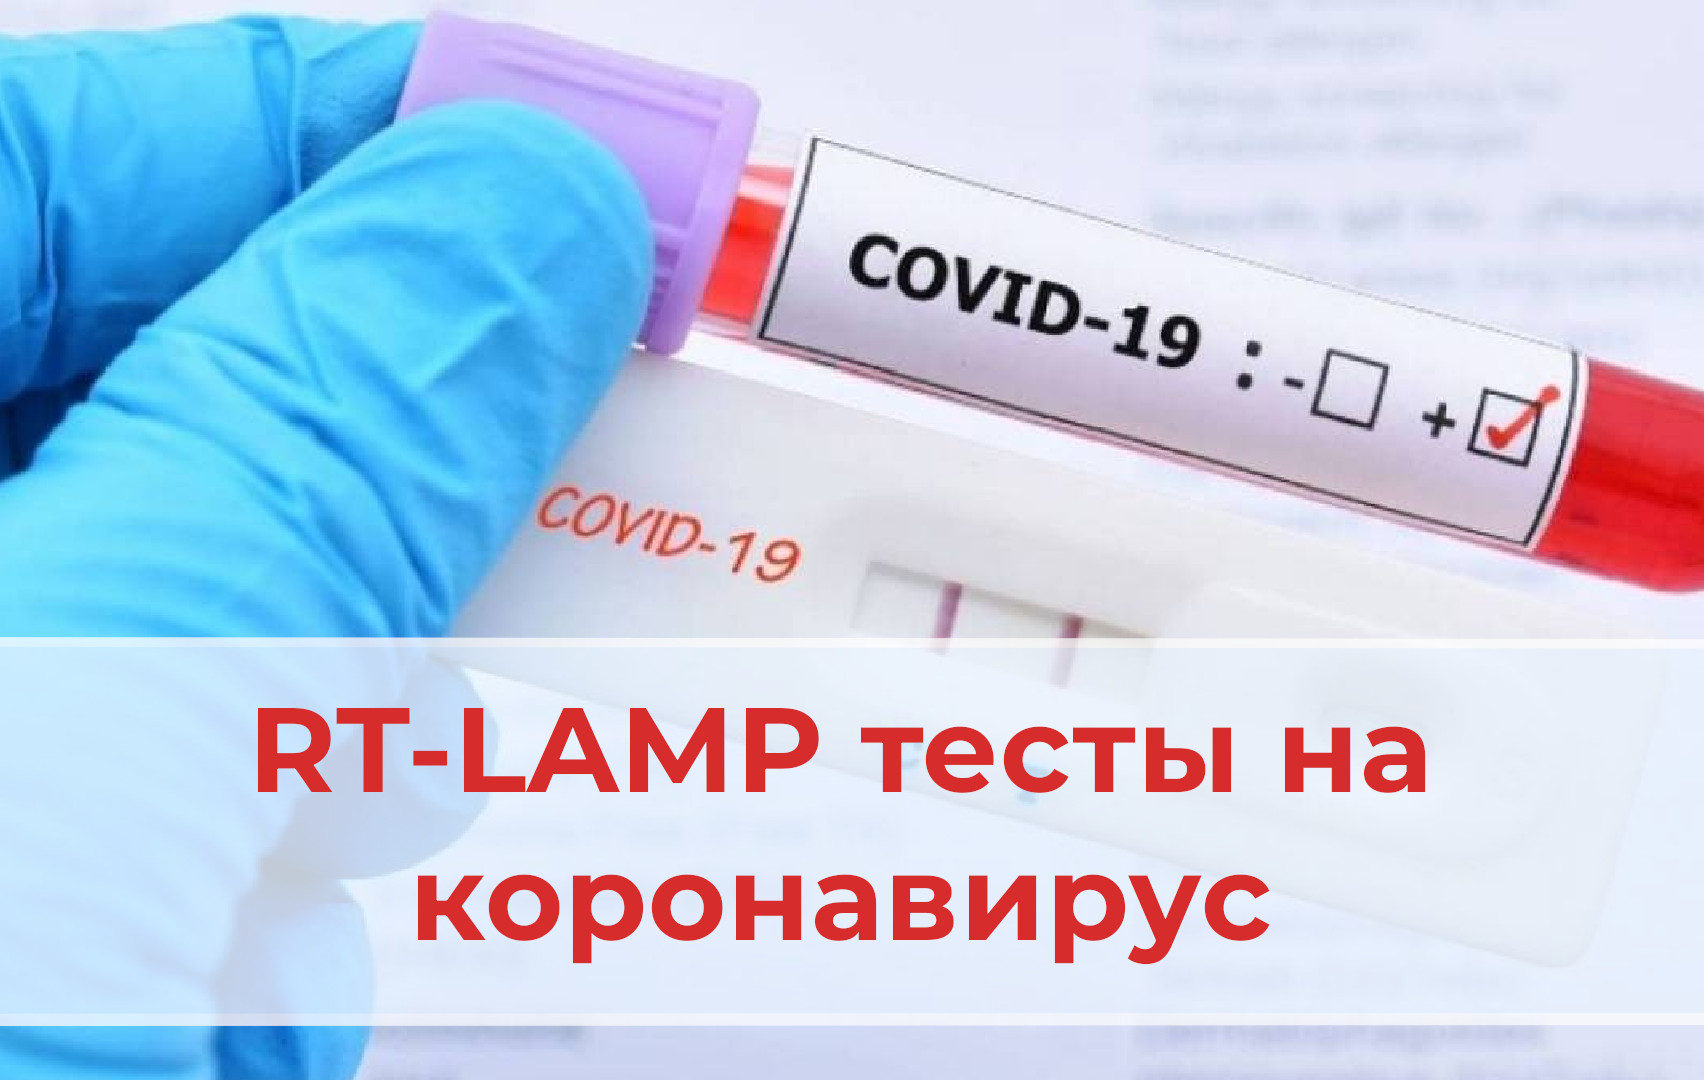 RT-LAMP тест на Covid-19